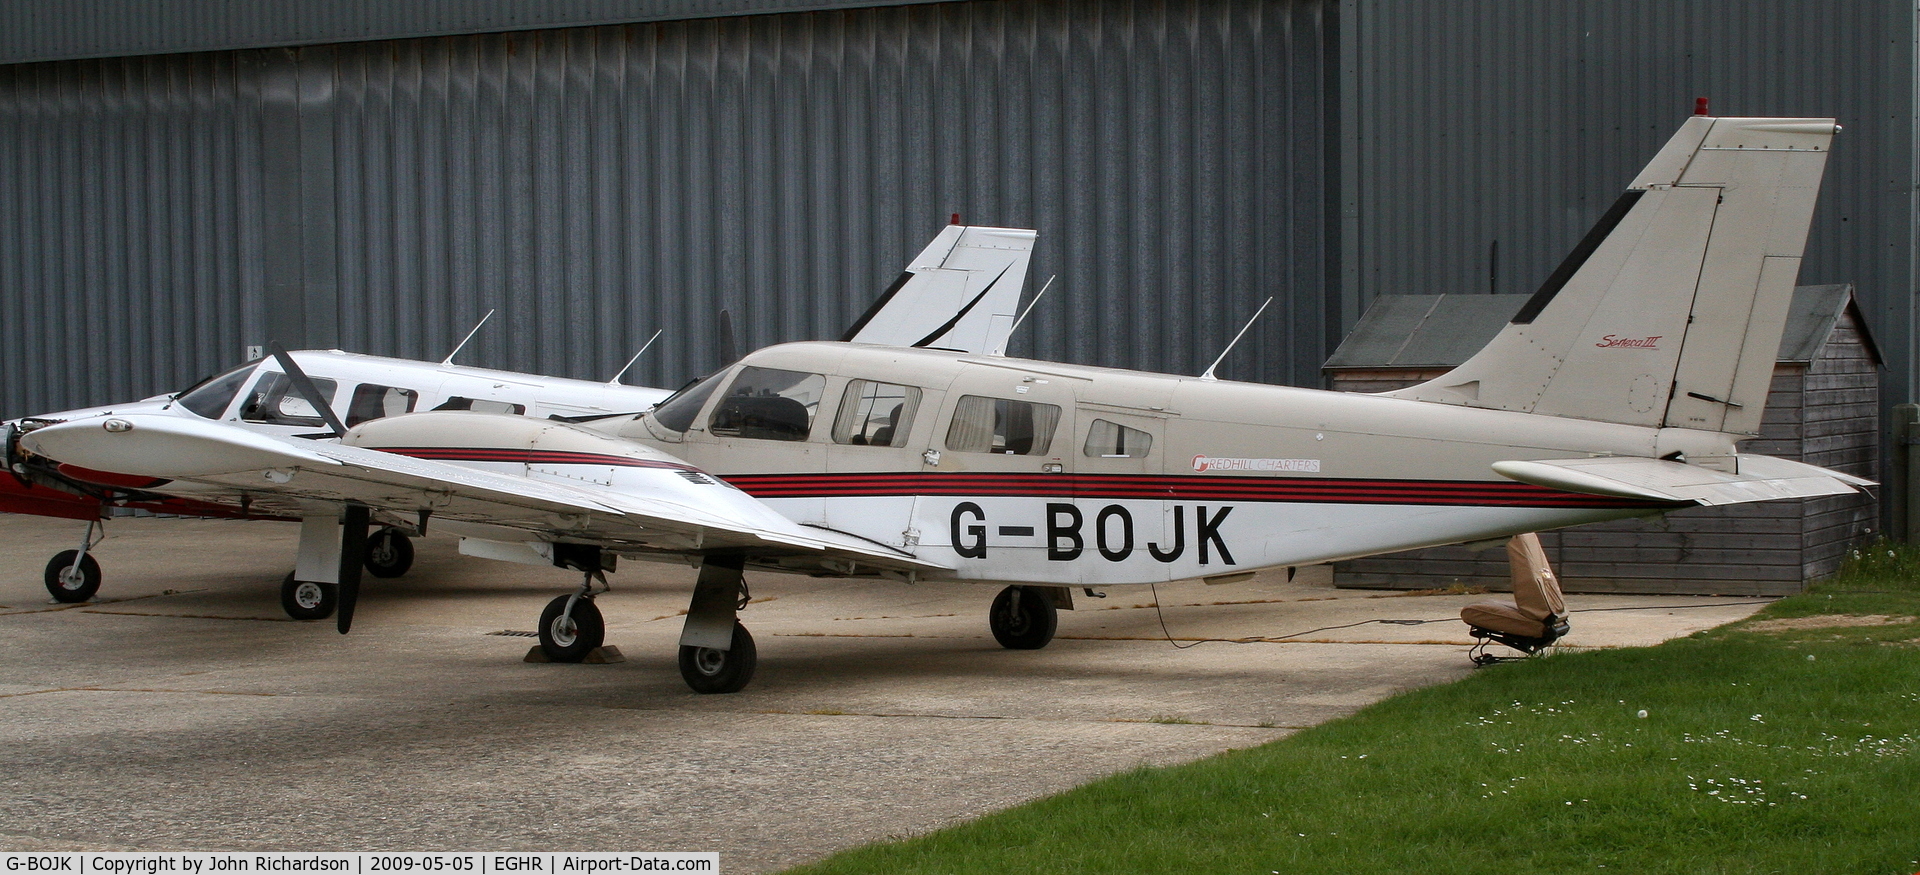 G-BOJK, 1986 Piper PA-34-220T Seneca III C/N 34-33020, At Goodwood